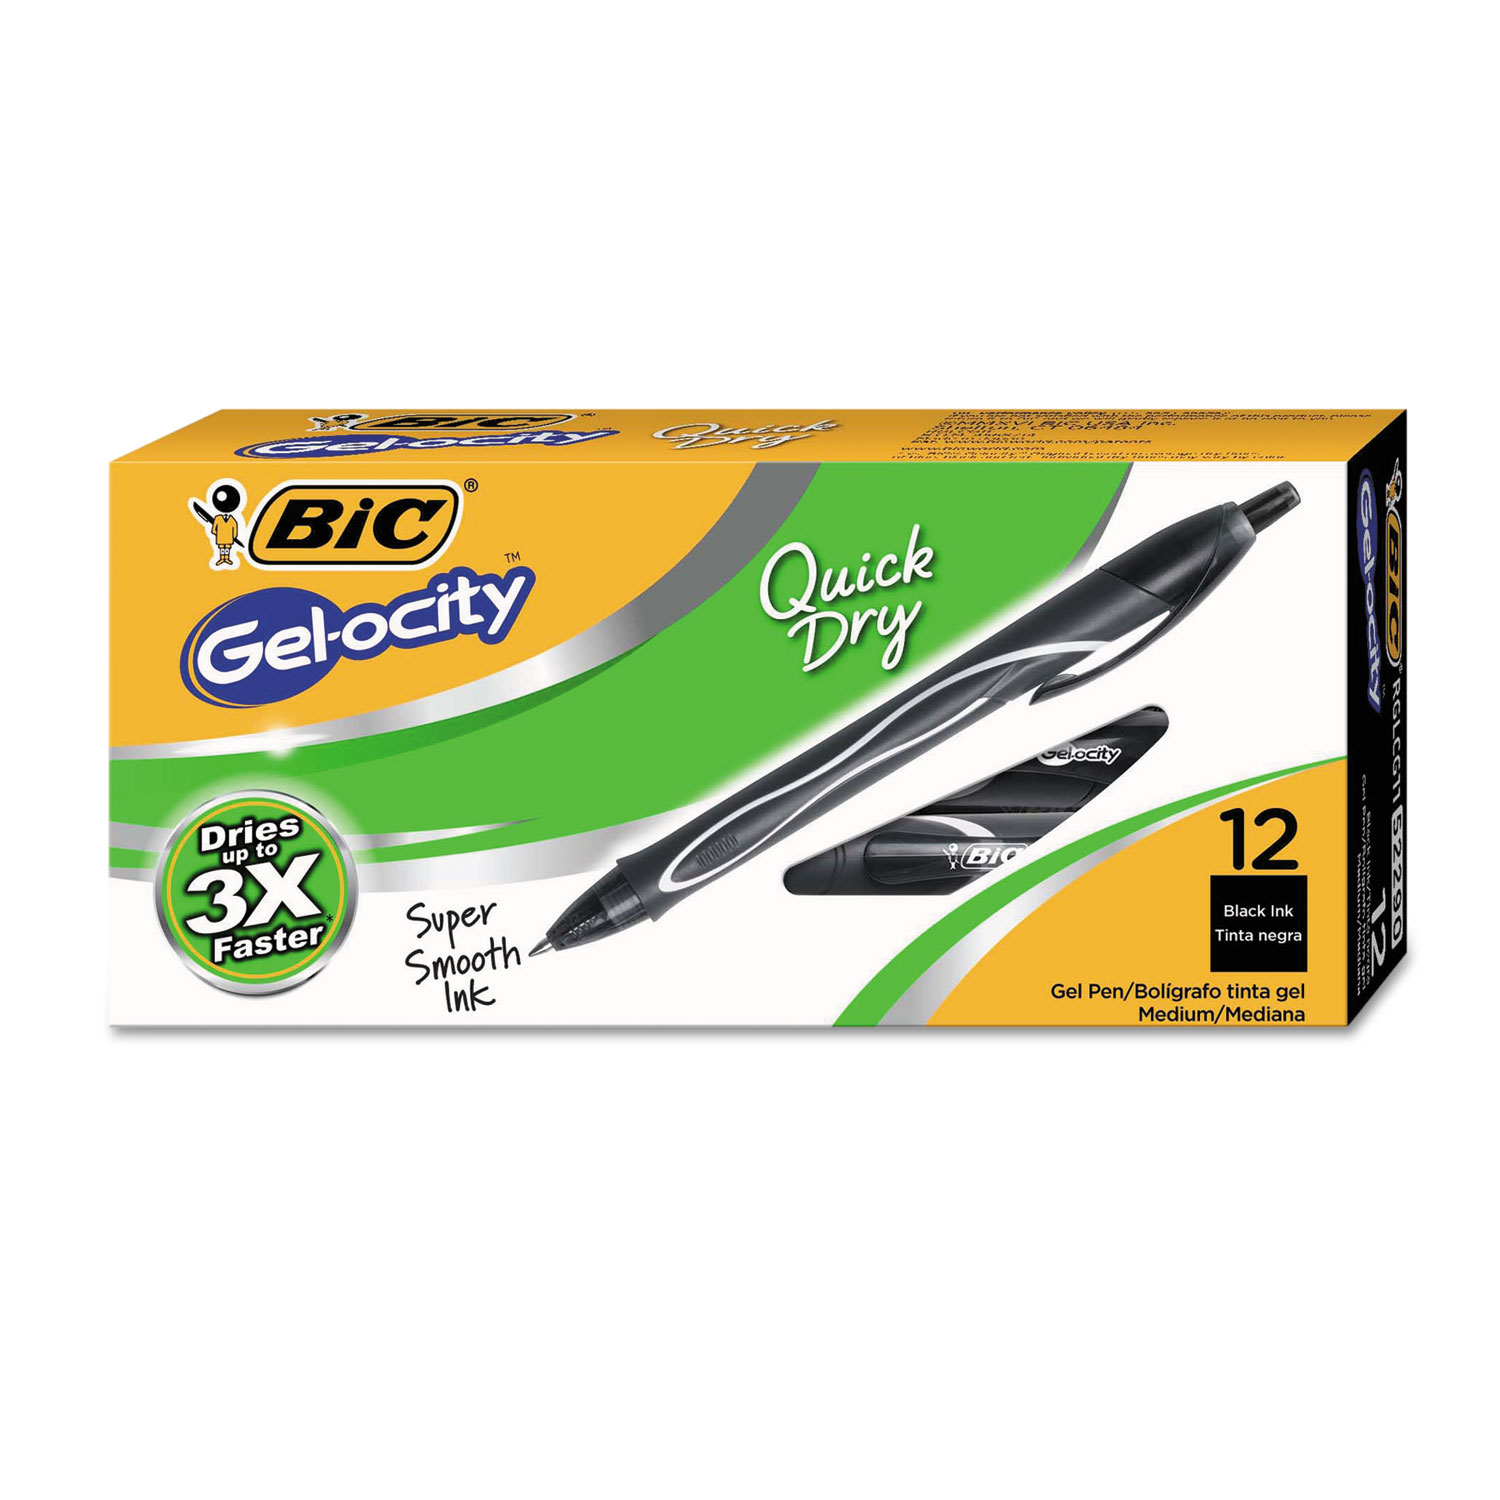 Gel-ocity Quick Dry Retractable Gel, Black Ink, Medium, 1 Dozen